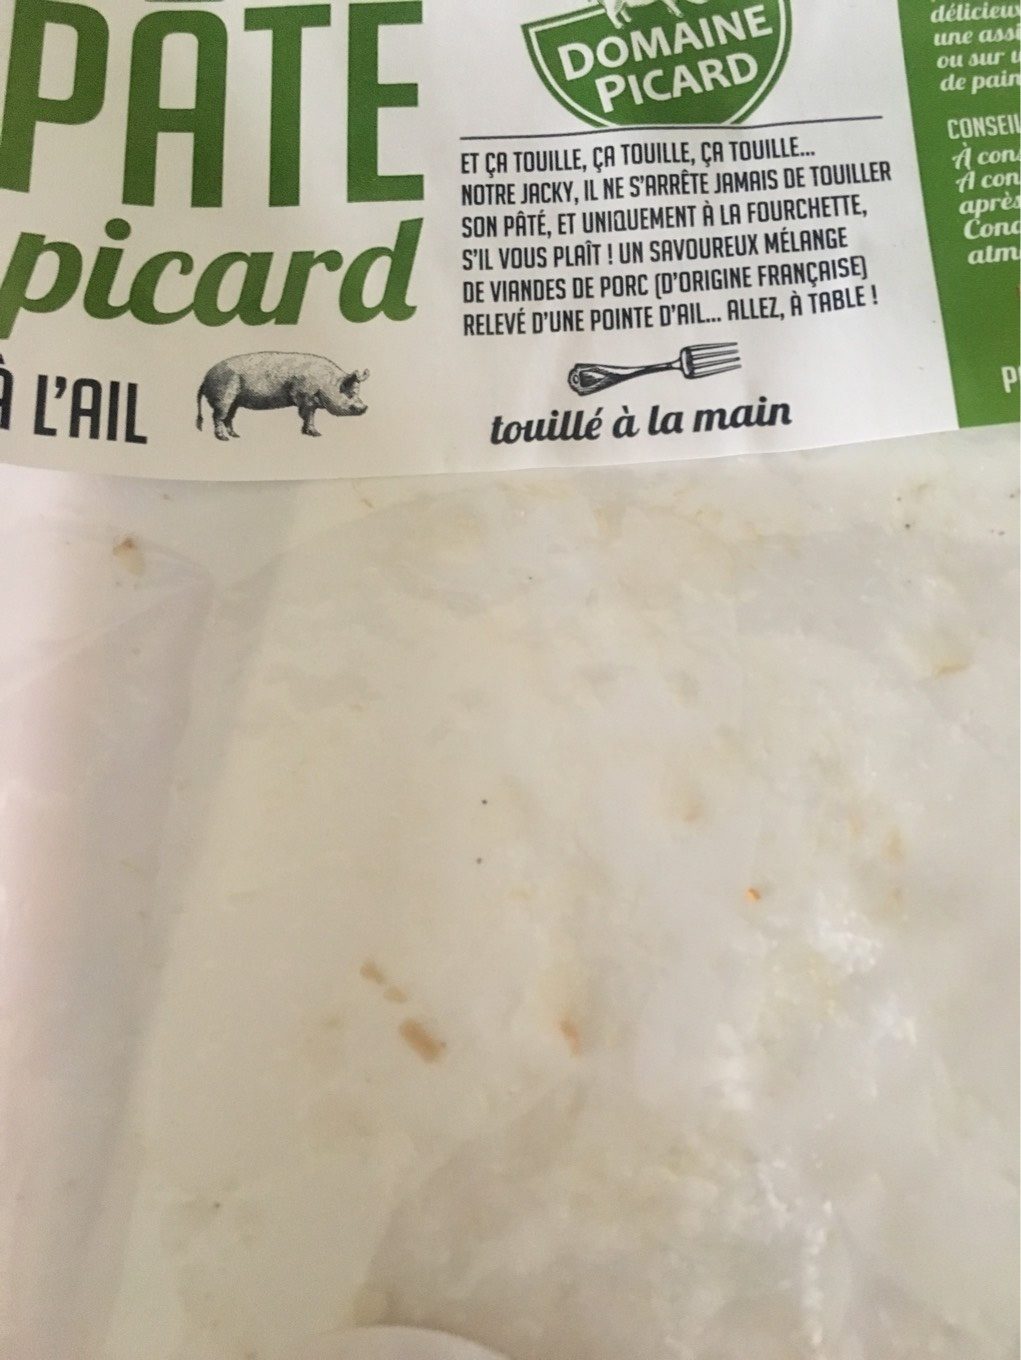 Pâté Picard - Product - fr